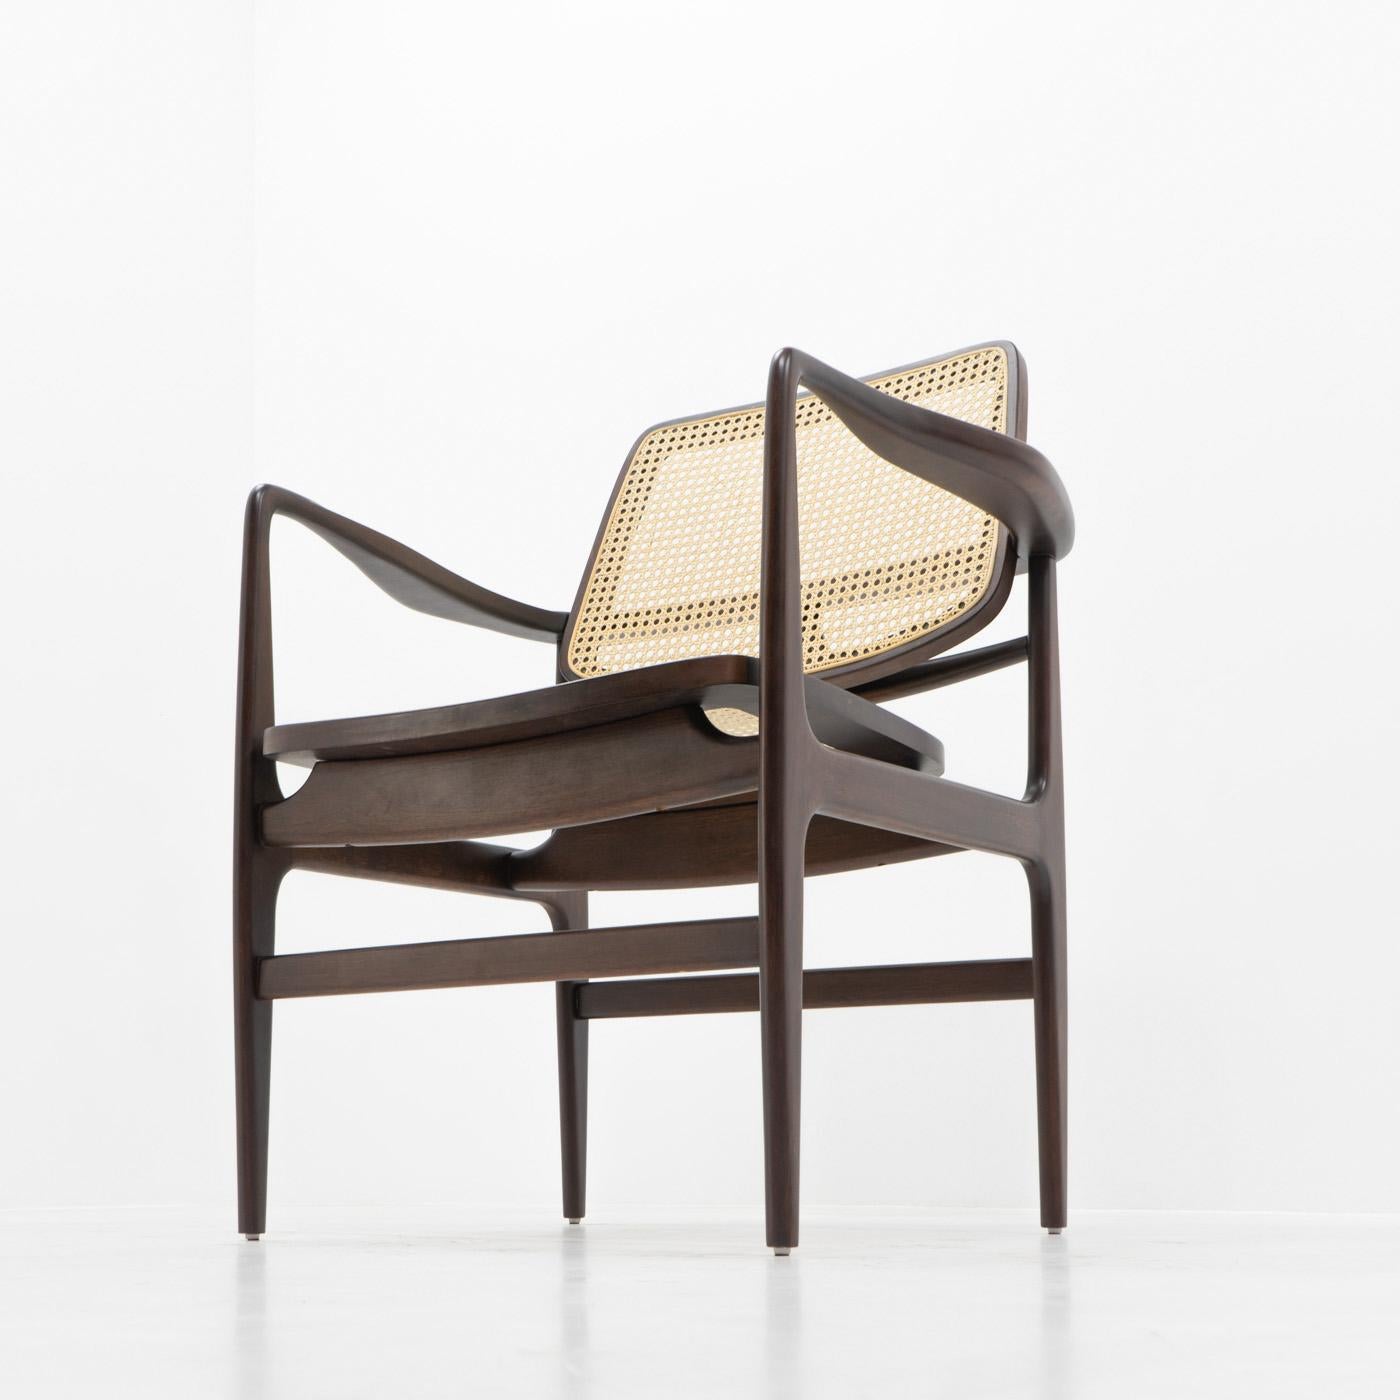 Sergio Rodrigues a établi la norme pour le mobilier moderne au Brésil dans les années 1950. 
Ses œuvres sont devenues une référence pour le design brésilien, qui utilise souvent des espèces de bois indigènes comme le jacaranda et l'imbuia :

L'une